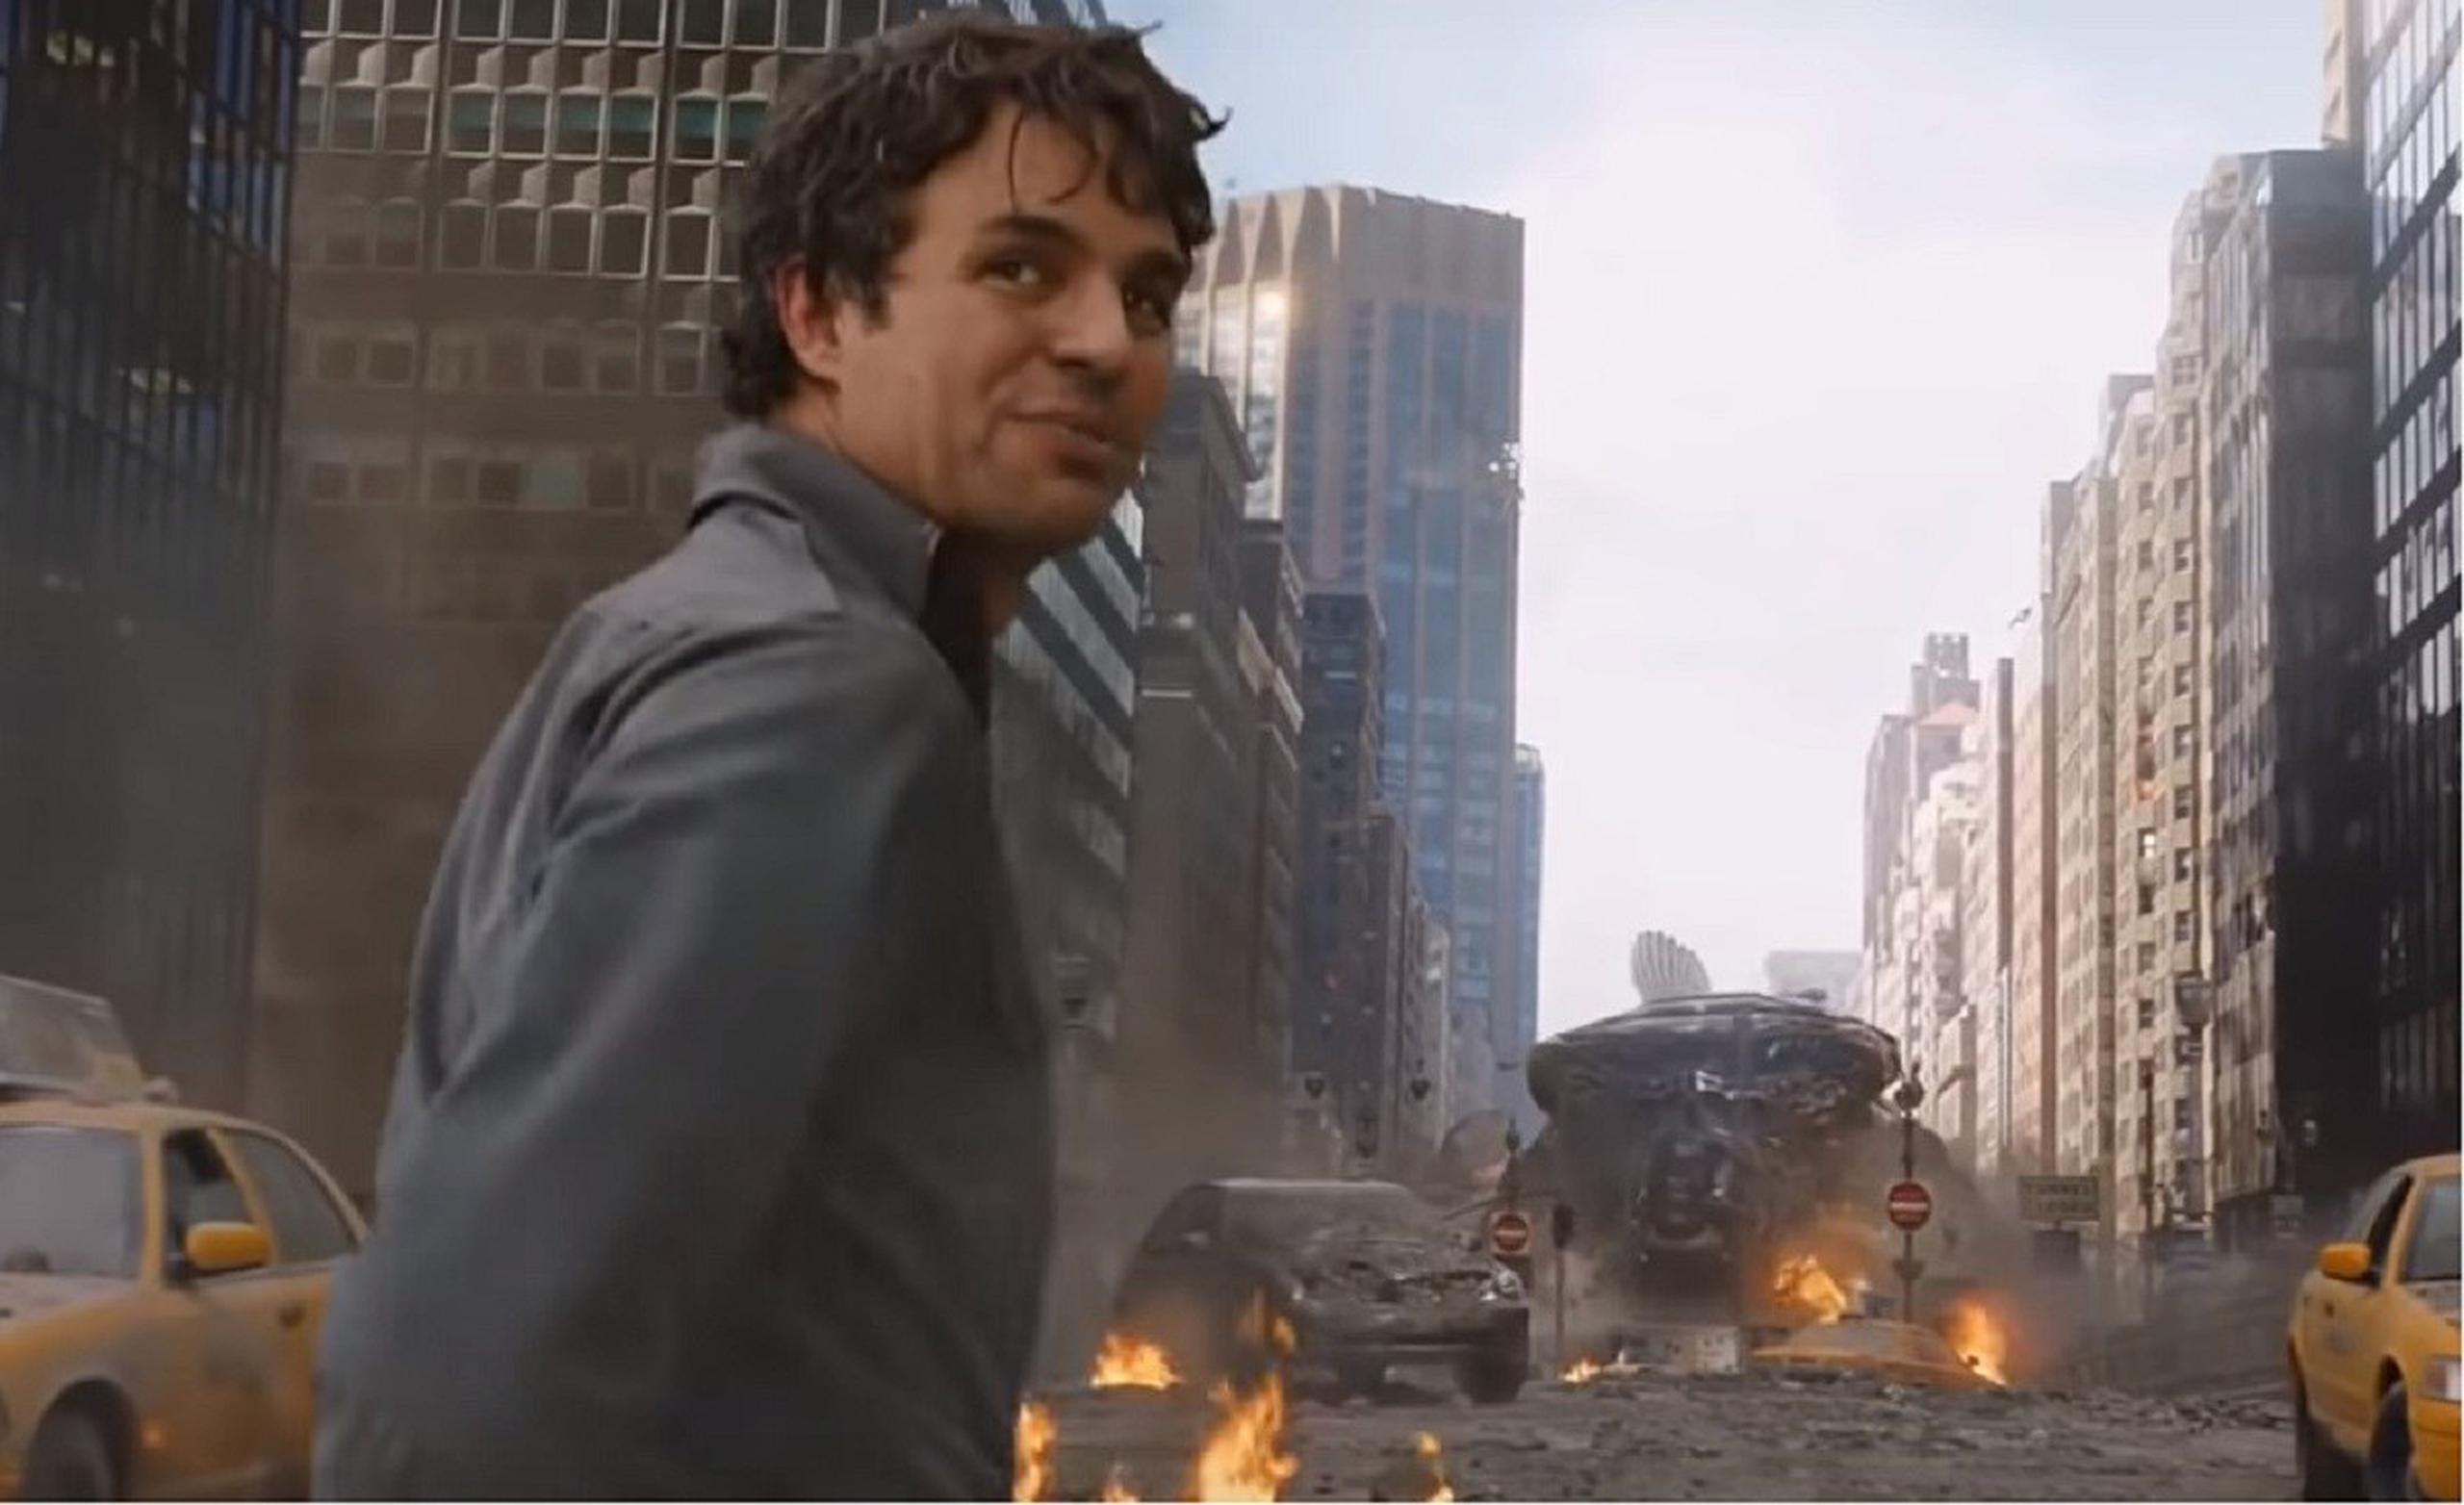 El secreto de Bruce ("The Avengers", 2012): Parte del drama de Hulk yace en el control de su ira, que tiene origen en las frustraciones de su pasado. (Captura vídeo)